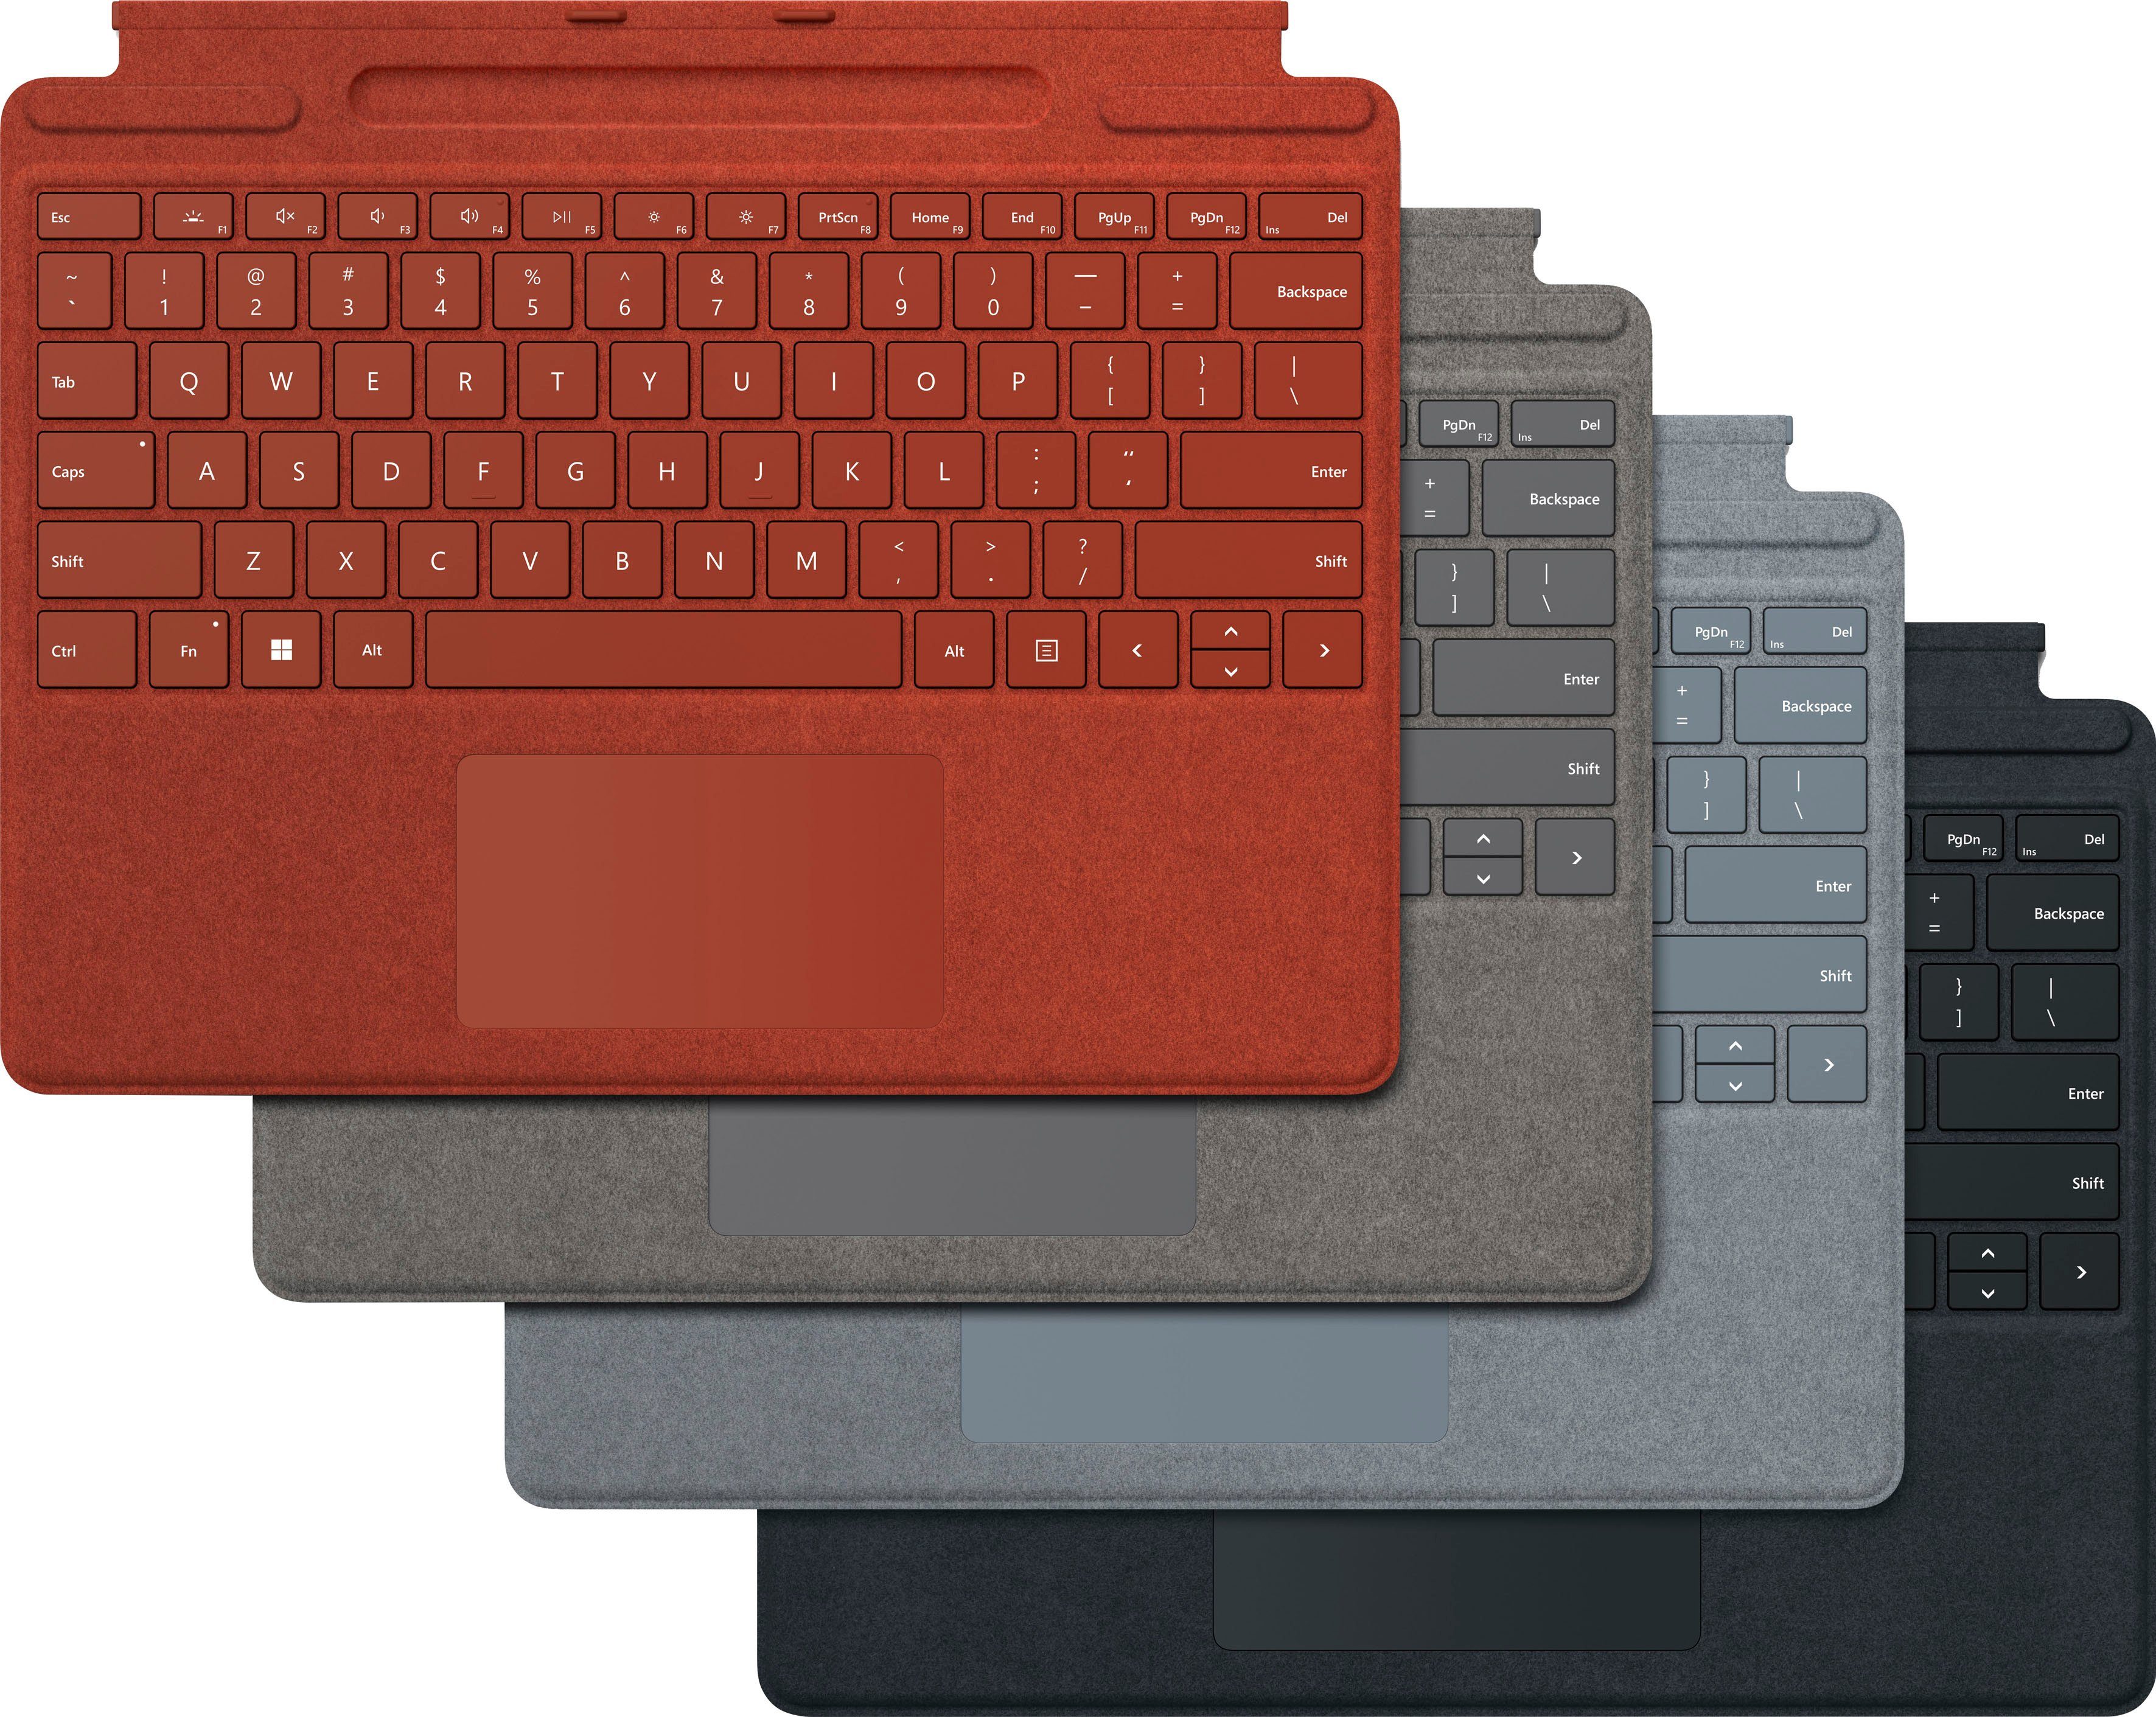 8XA-00025 Keyboard Microsoft Tastatur Rot Touchpad) Signature Surface mit Pro (Tastatur